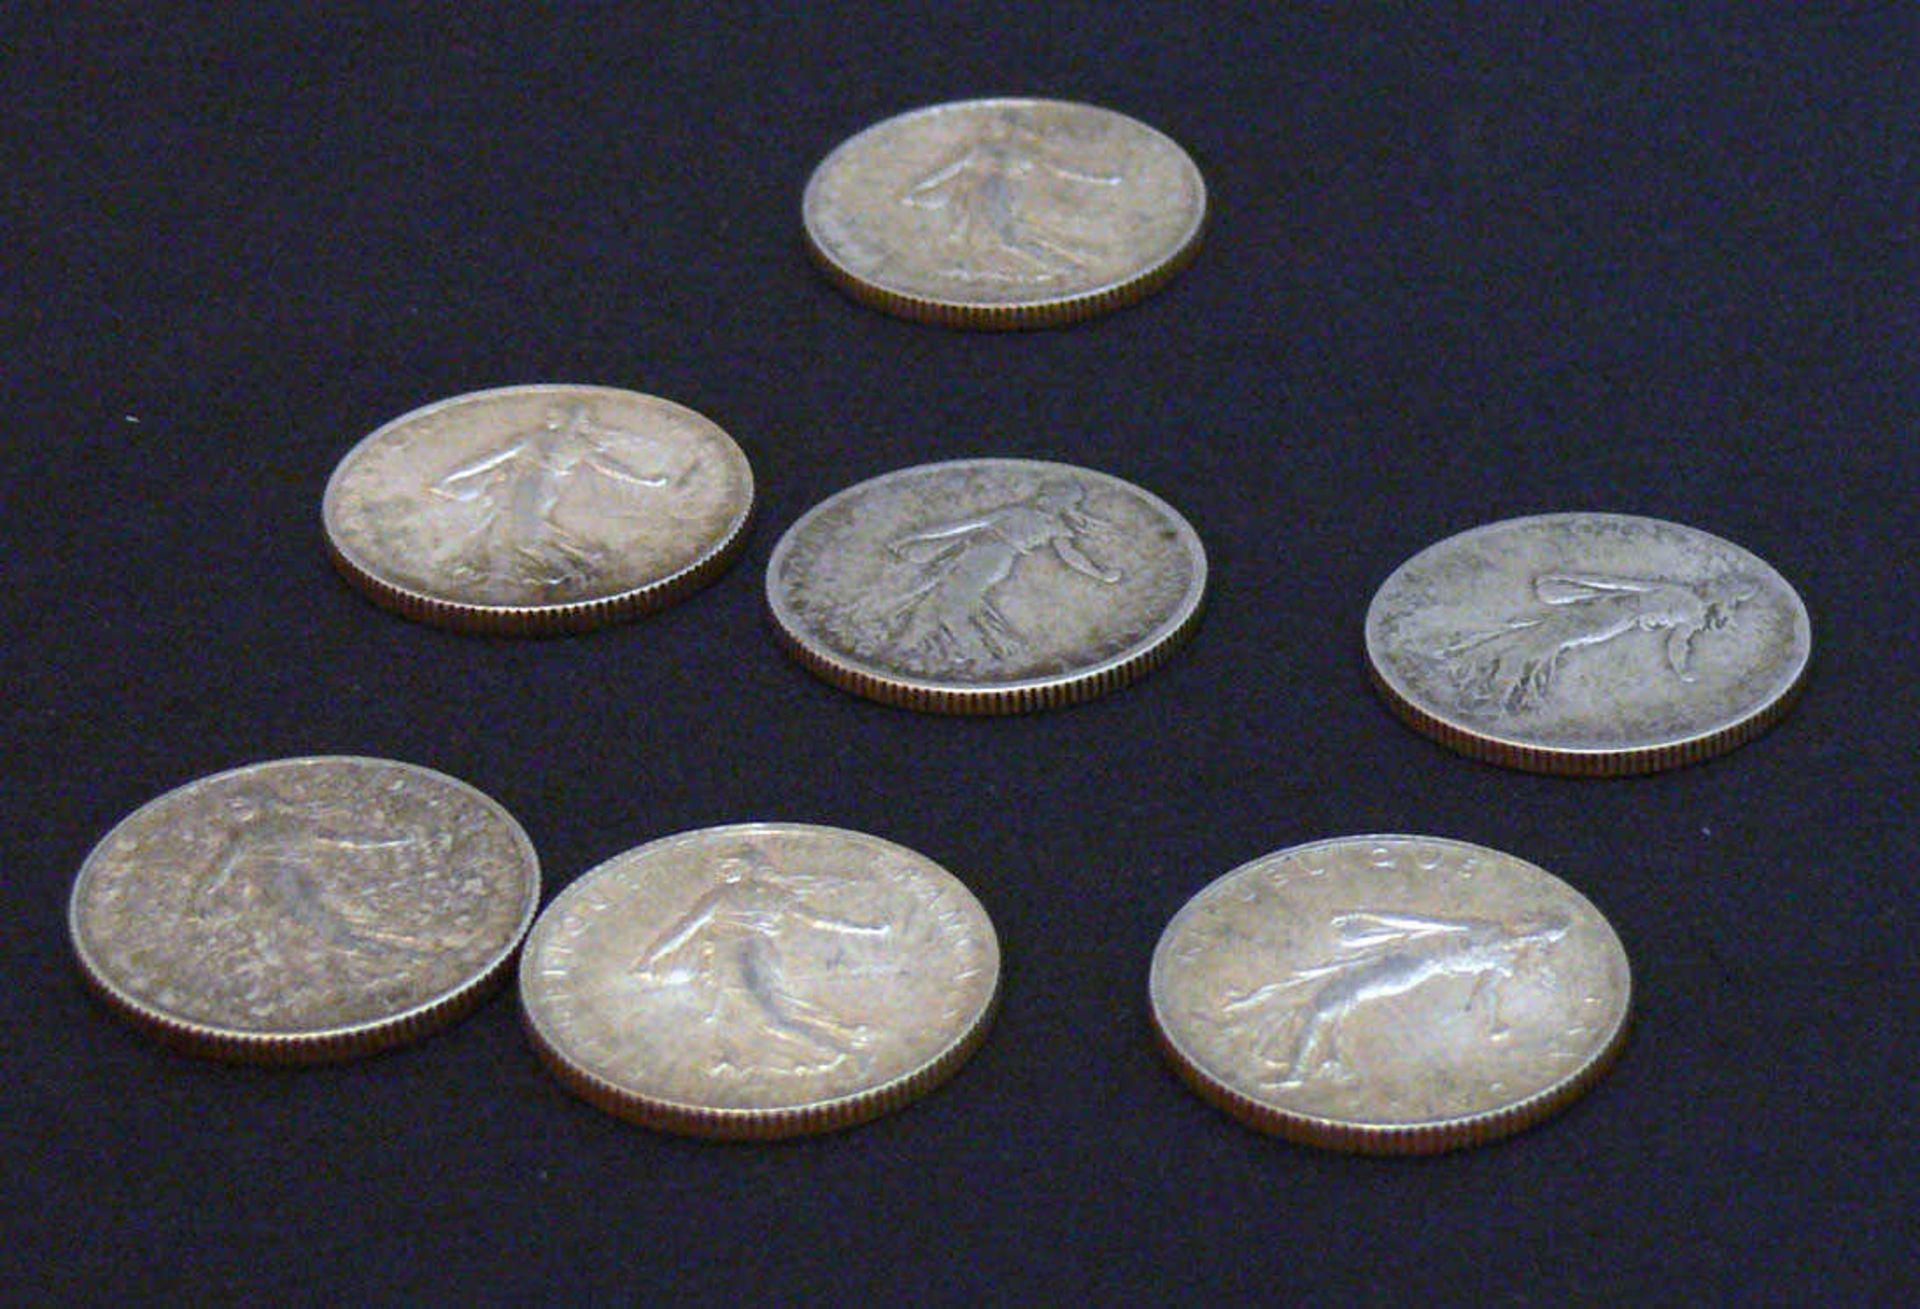 Lot von 7x 2 Francs Stücke Frankreich zwischen 1898 und 1919.Mindestpreis: 10 EUR - Image 2 of 2